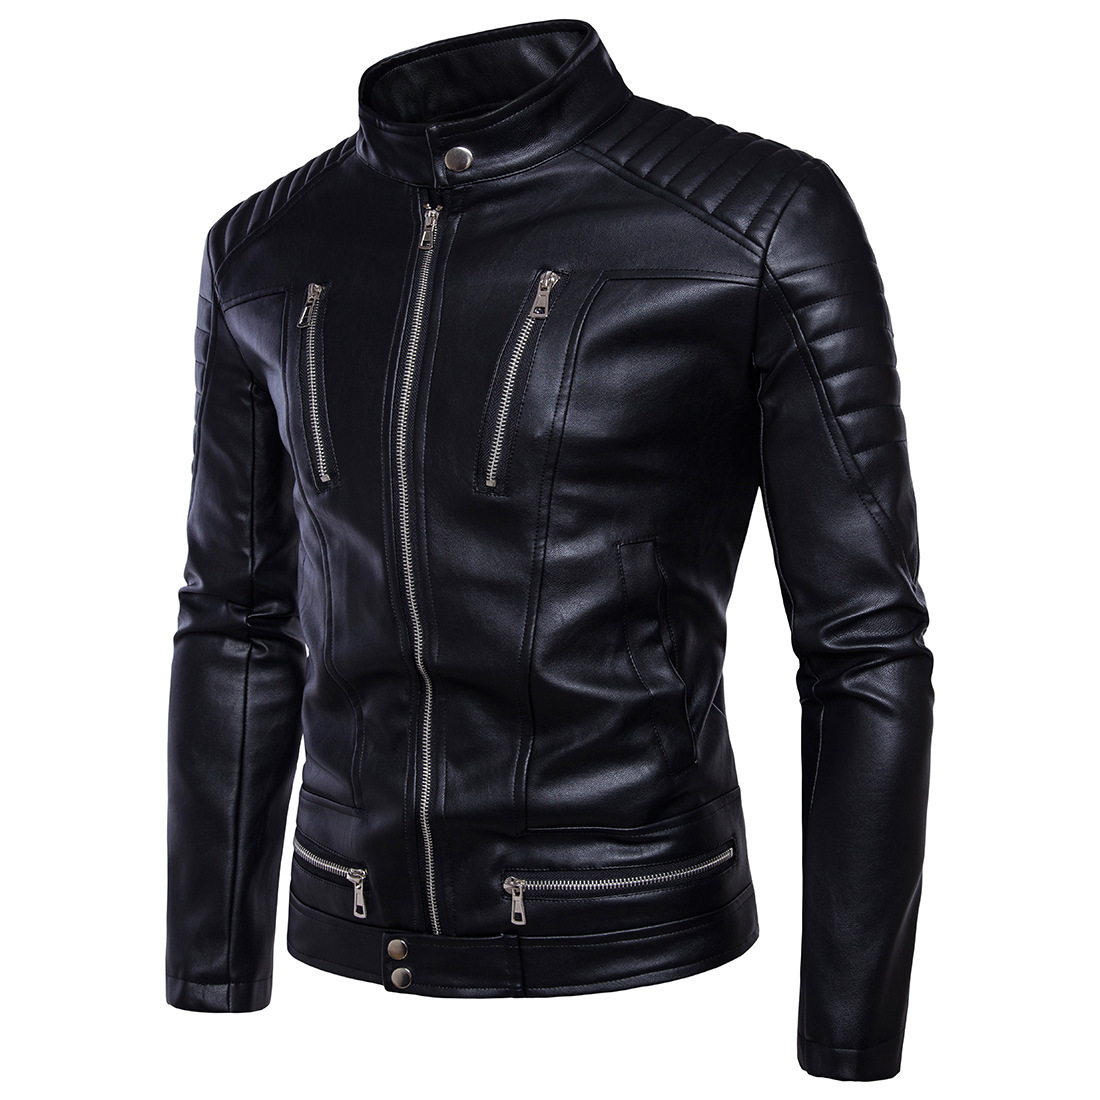 2018 New Yama Leather Jacket Men's Motorcycle Multi-Zipper Leather Motorcycle Leather Jacket Coat B013